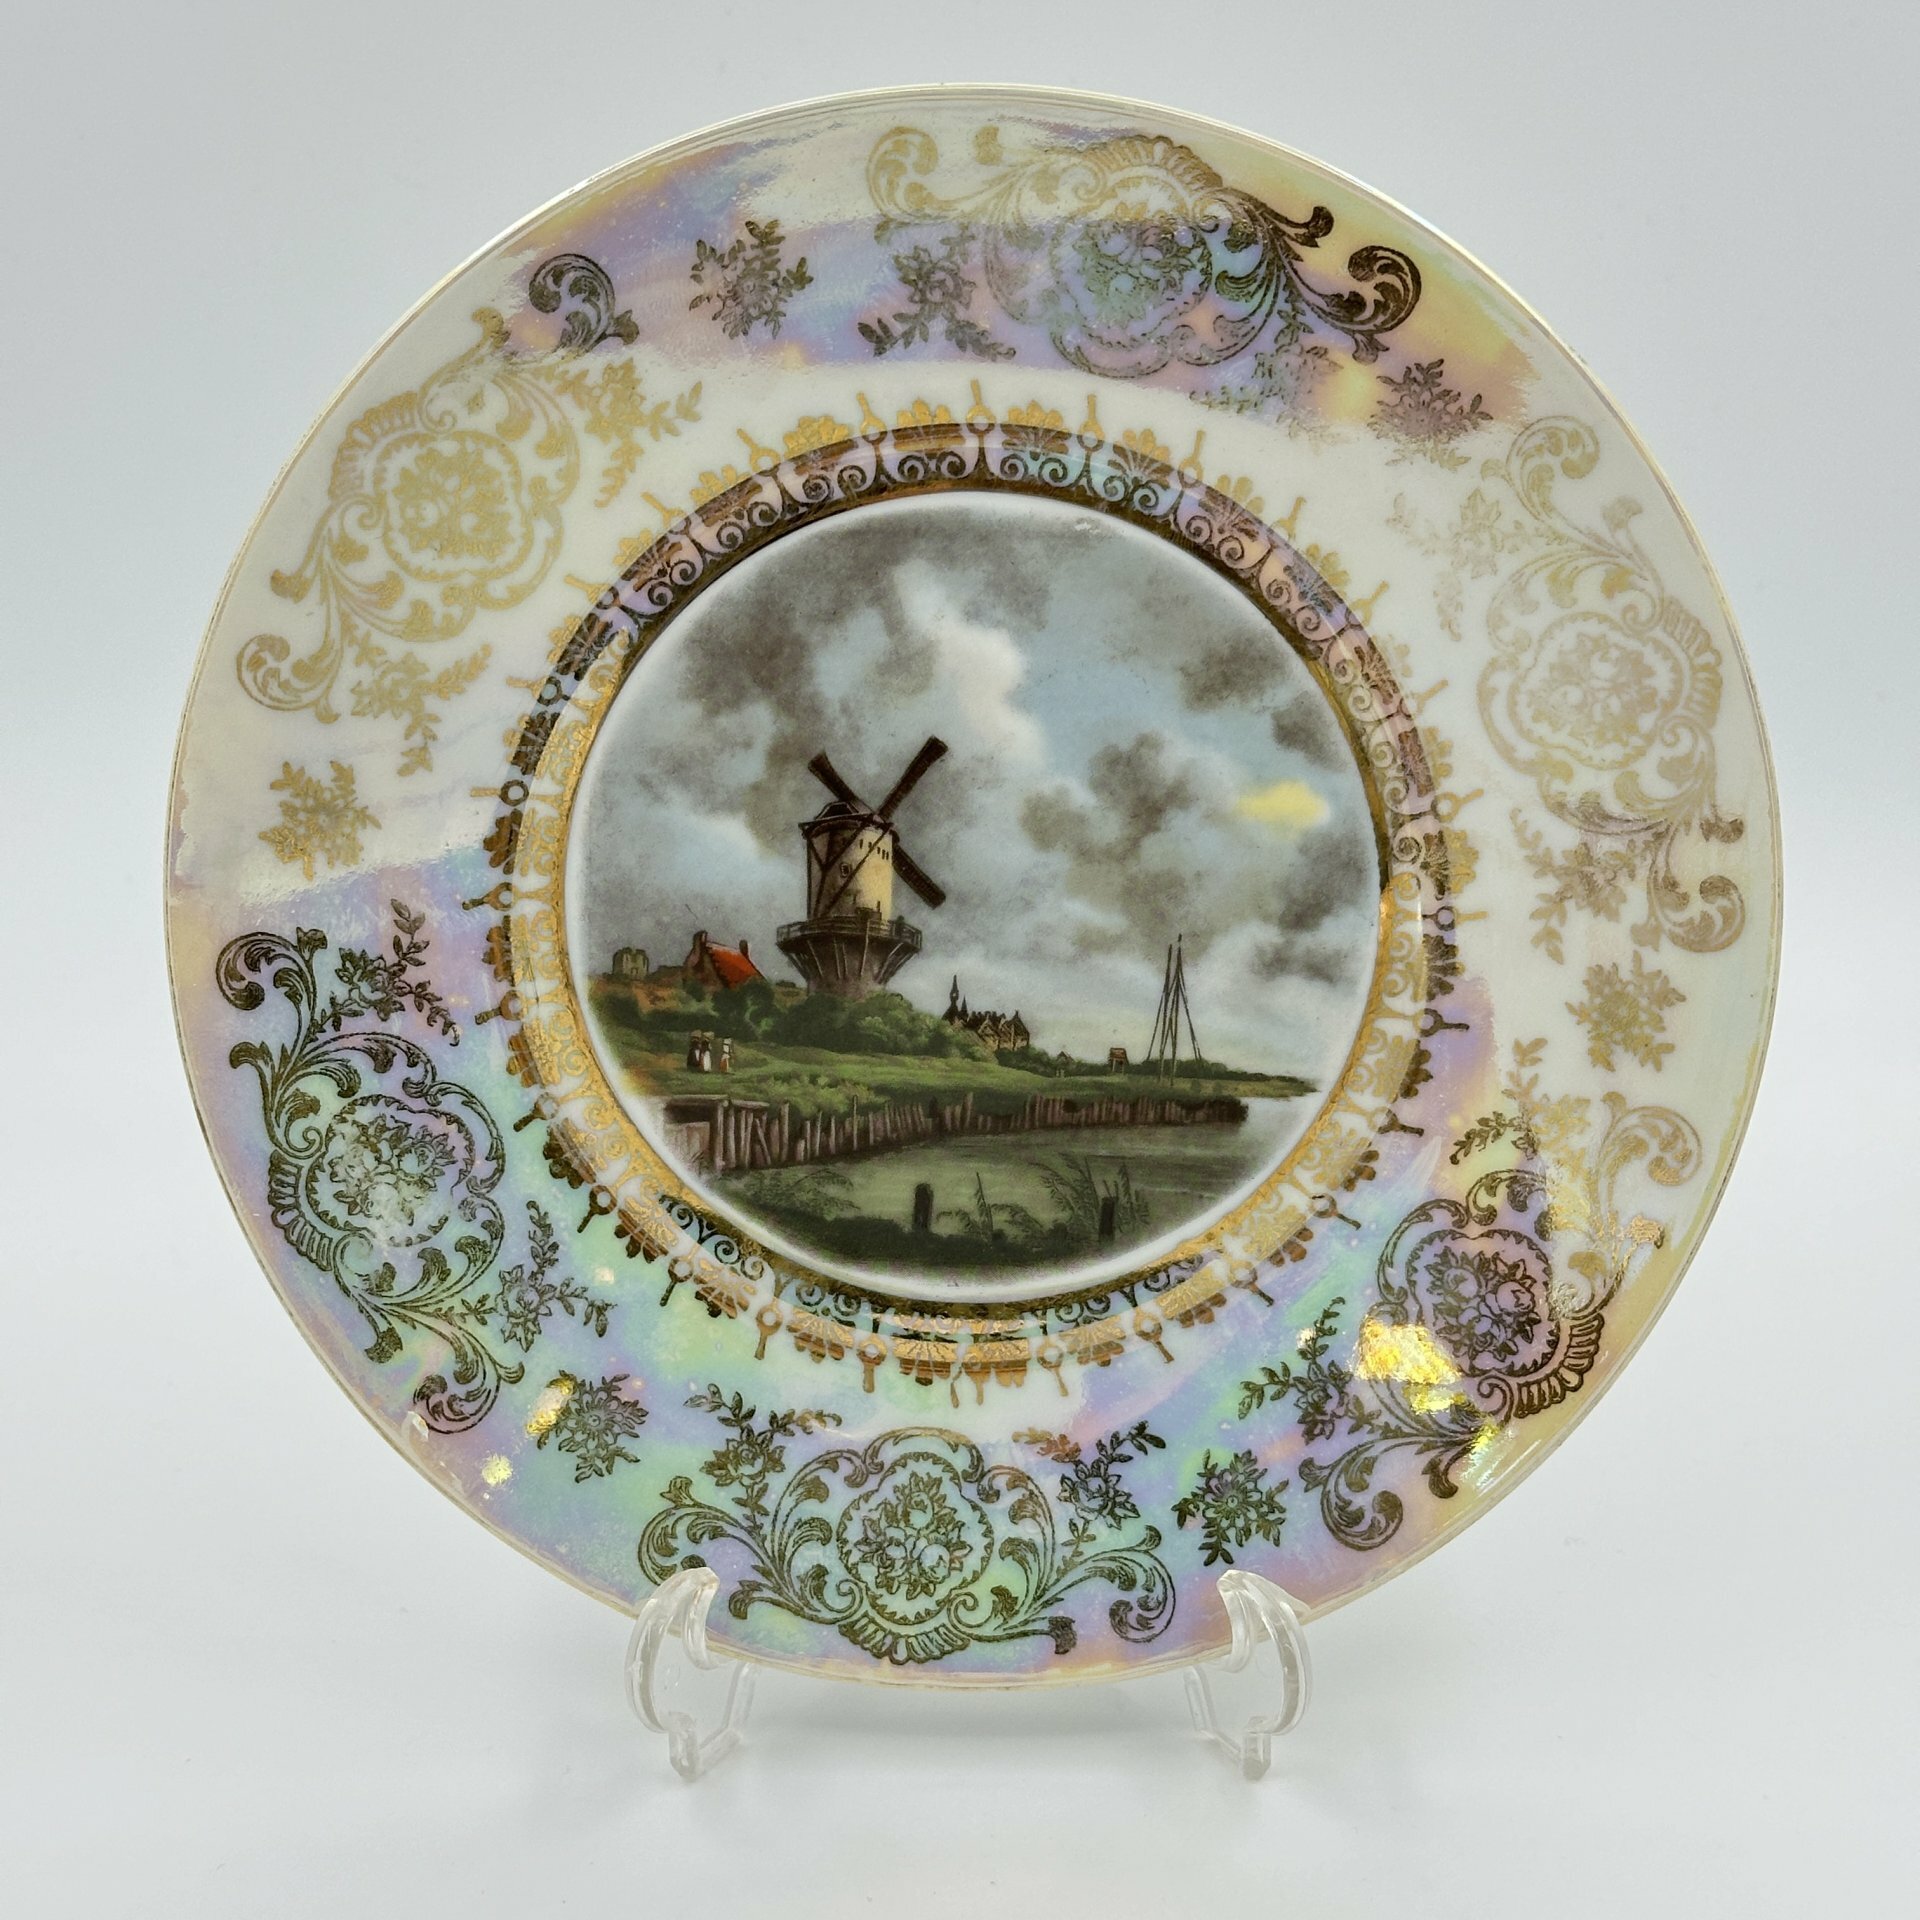 Настенная тарелка с изображением мельницы, студия декора "Porzellanmalerei Erich Parbus"